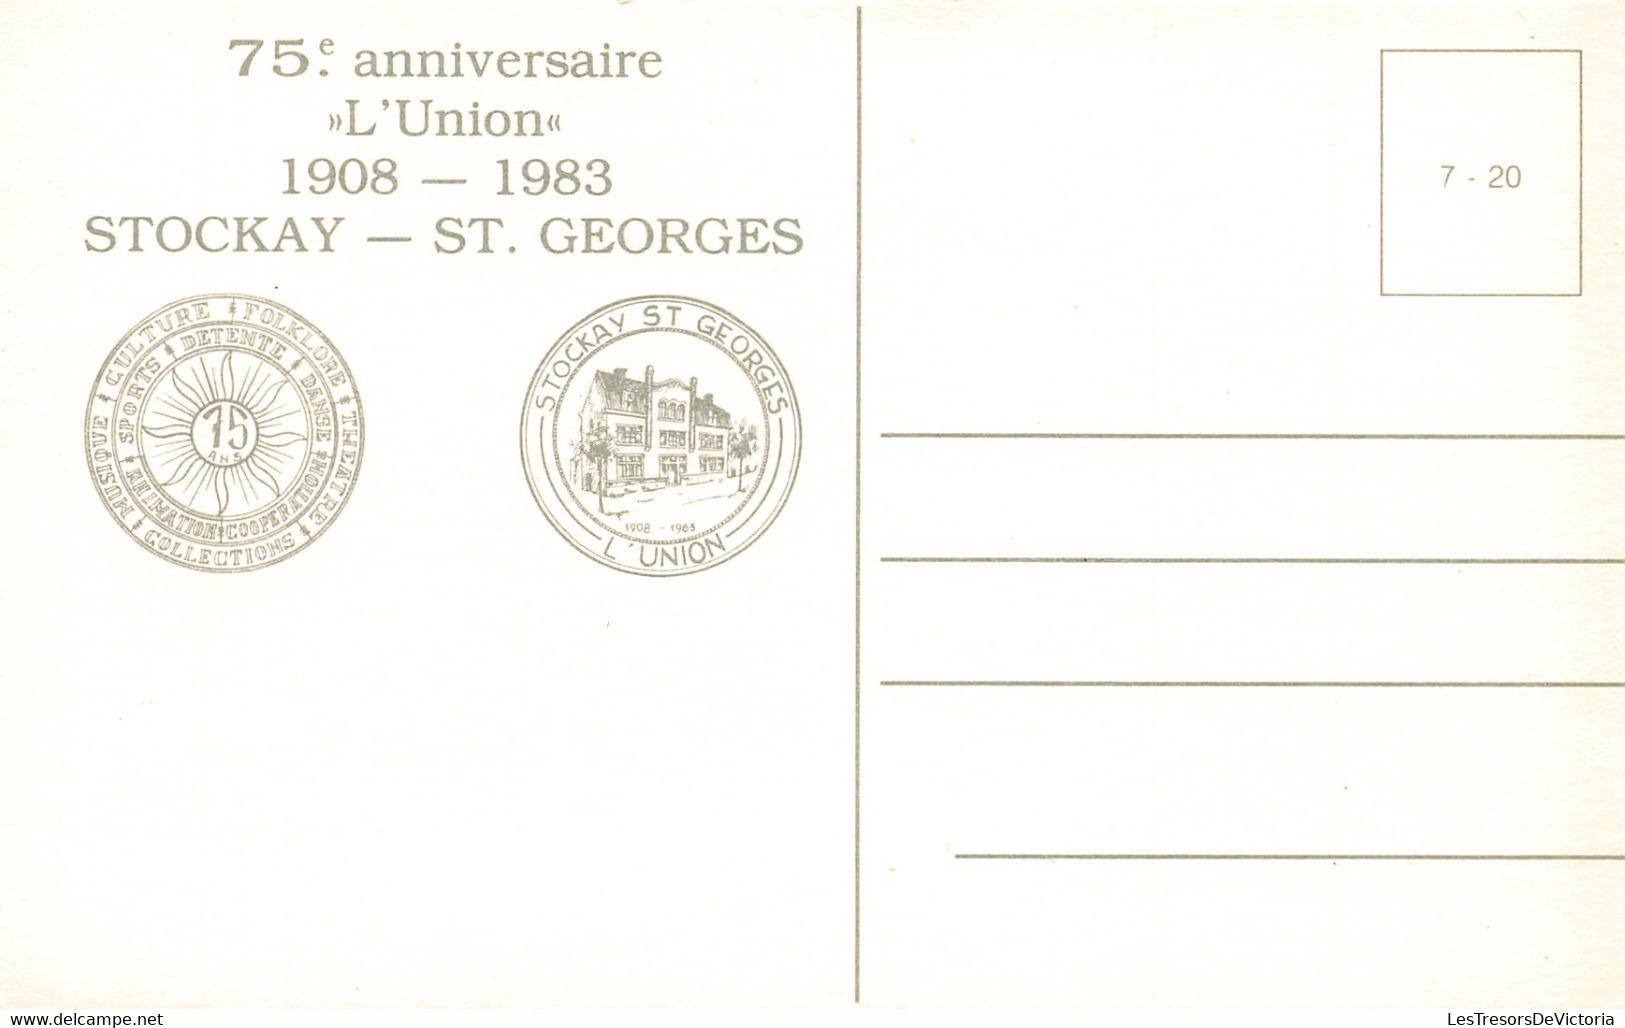 Belgique - Lot de 14 Cartes de Stockay Saint Georges - 75ème anniversaire de l'union 1908 1983 - C. Postale Ancienne